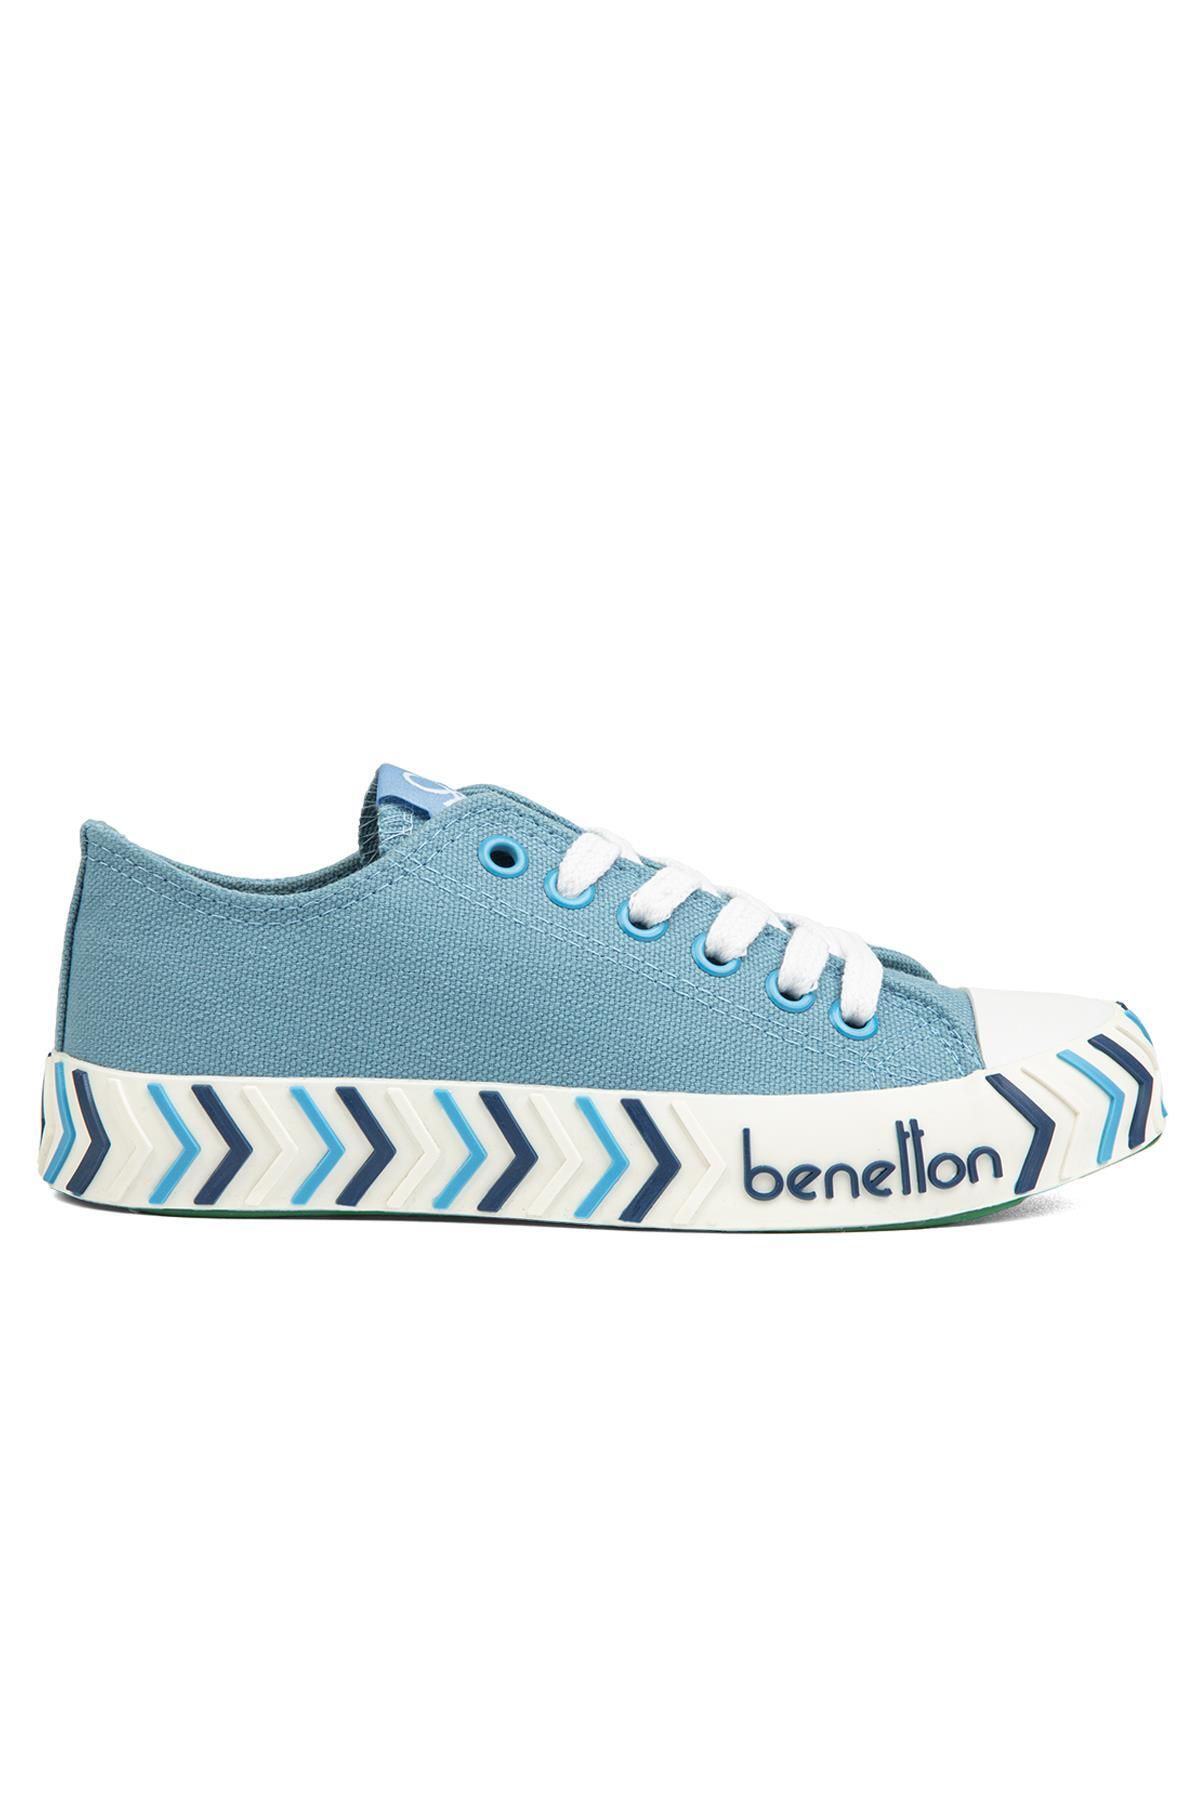 Benetton ® | BN-90624- Bebe Mavi - Kadın Spor Ayakkabı